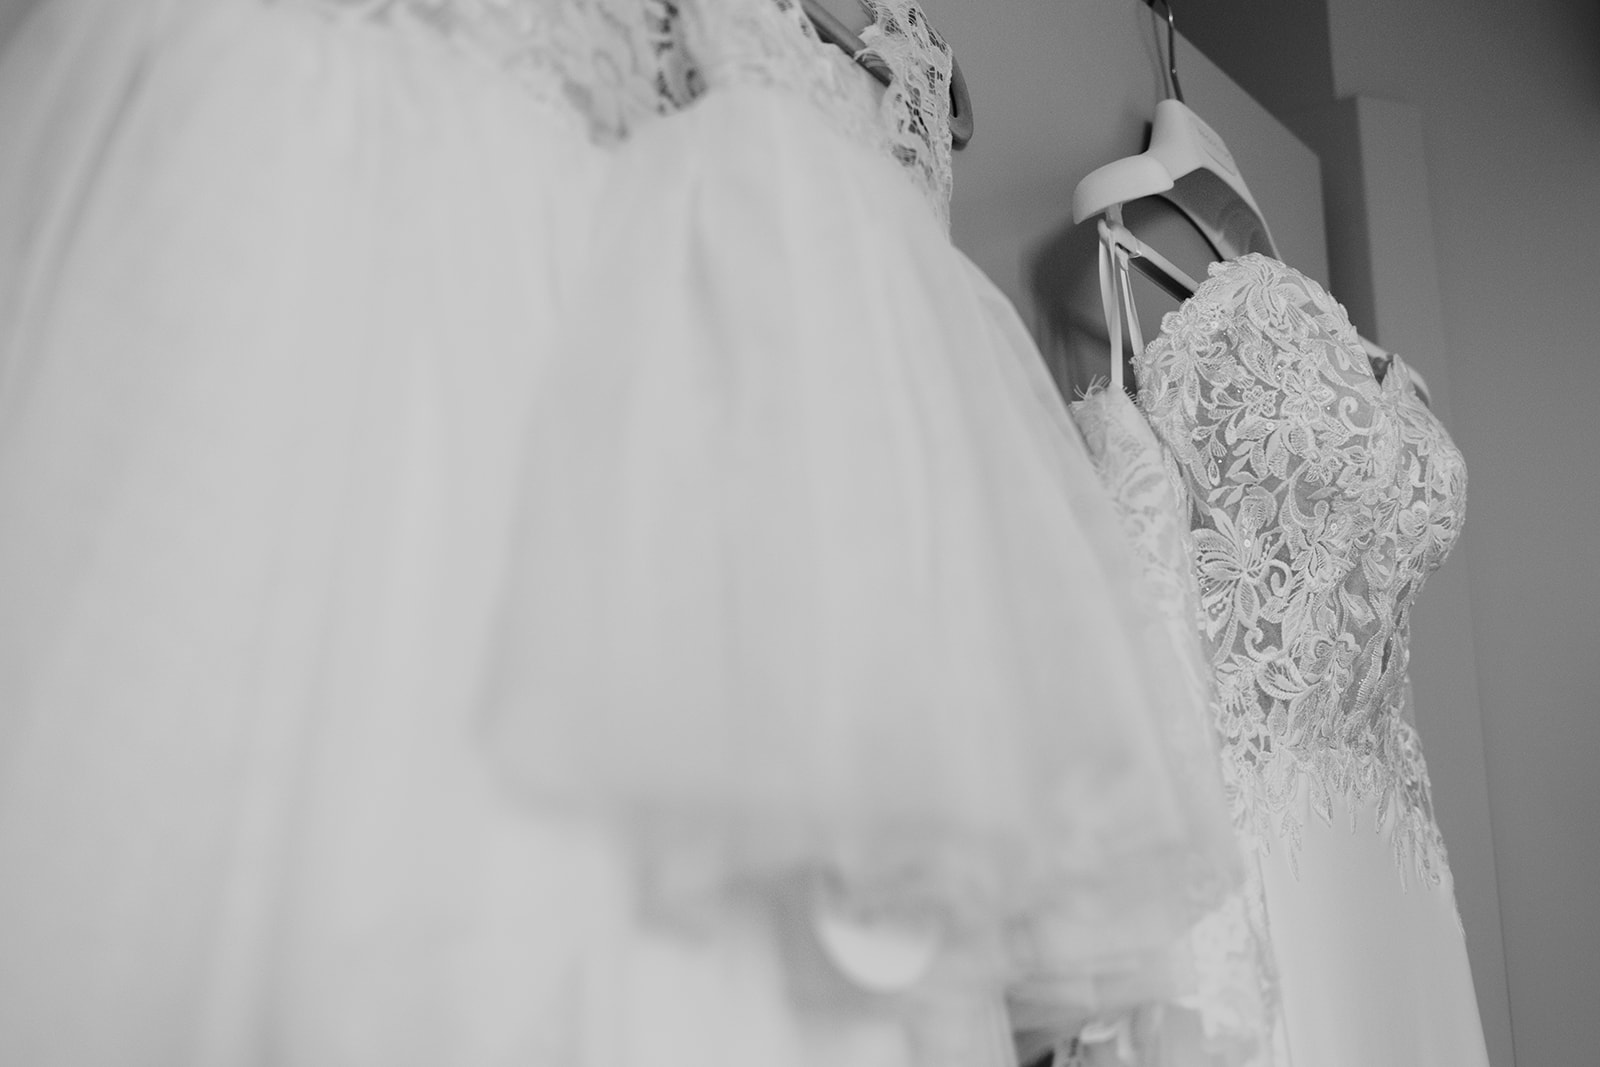 Photographe de mariage dans l'Ain, les détails des accessoires de la mariée